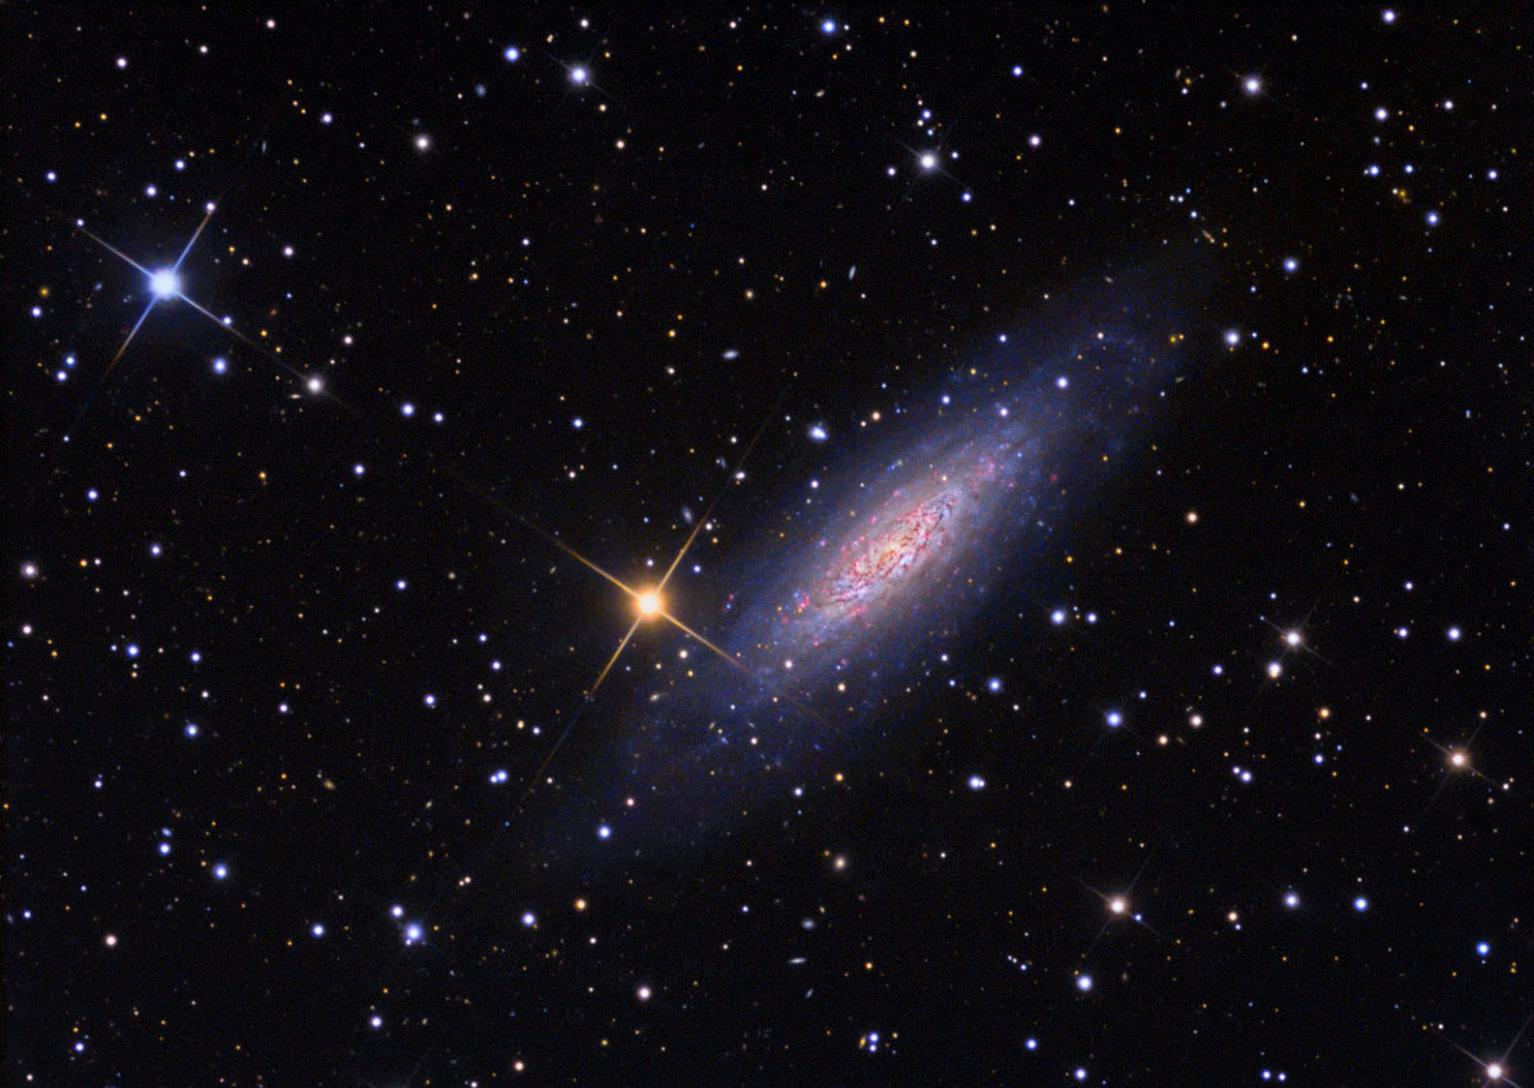 另类星系NGC 6503孤独地存在于宇宙空间中